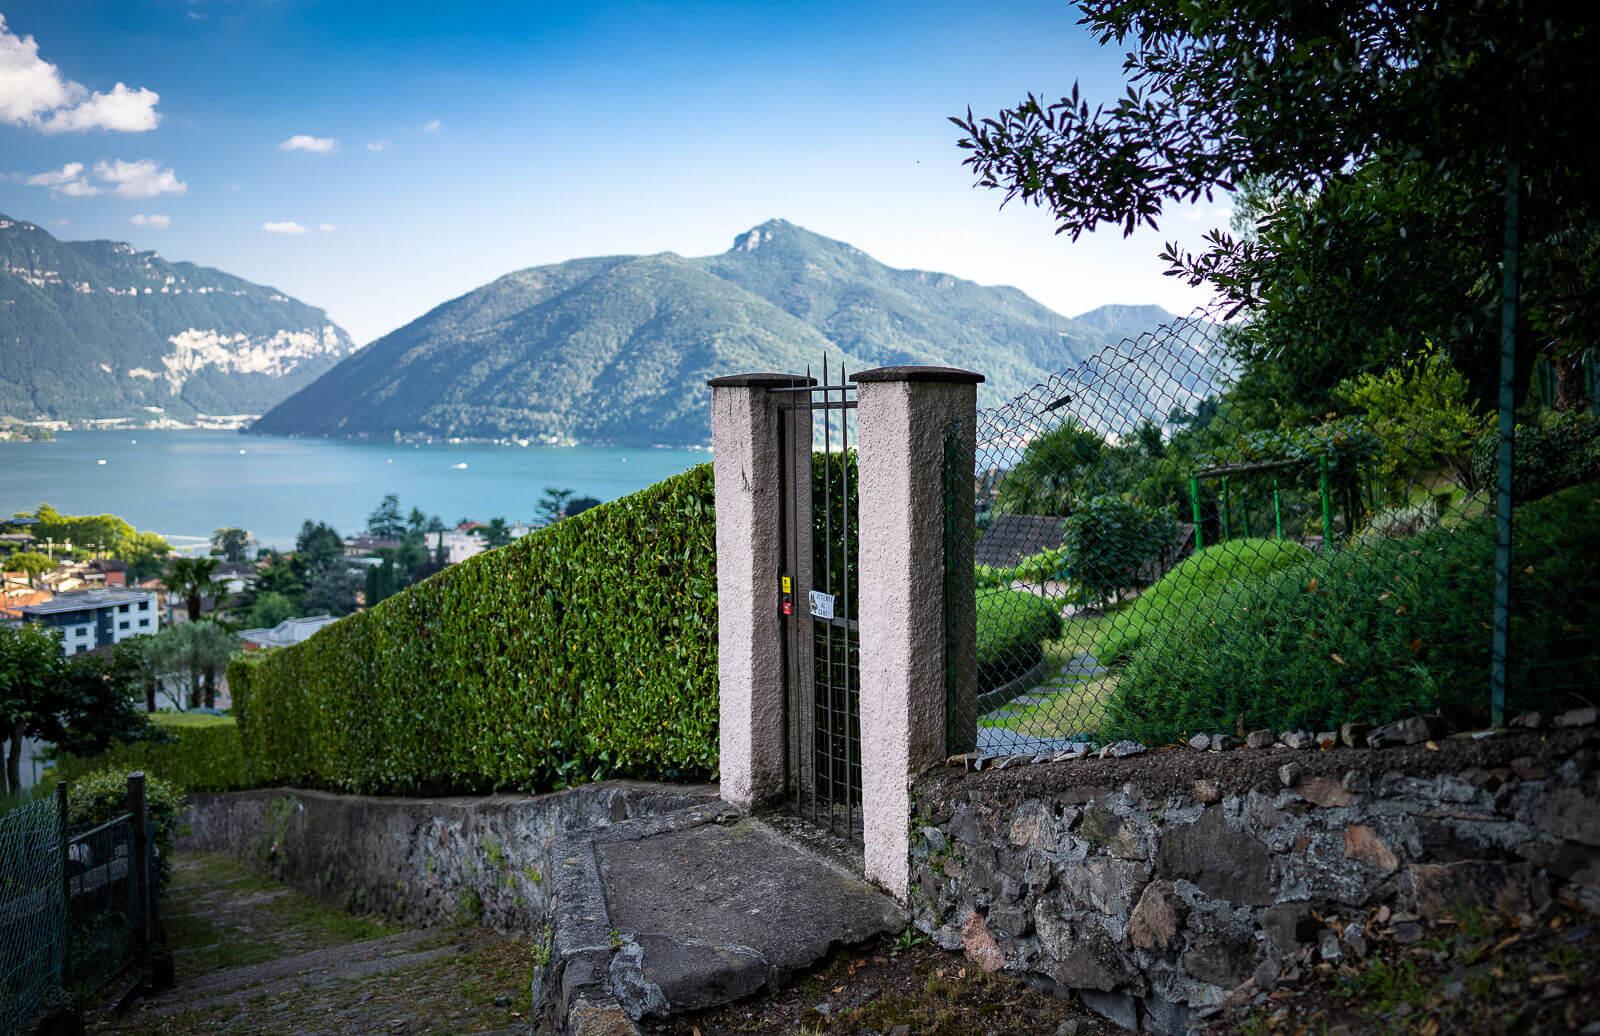 Reisetipps - Review - Urlaub in der Schweiz, in Melide, Lugano - Luxuriöses Urlaubsappartement, Ferienwohnung am Luganer See